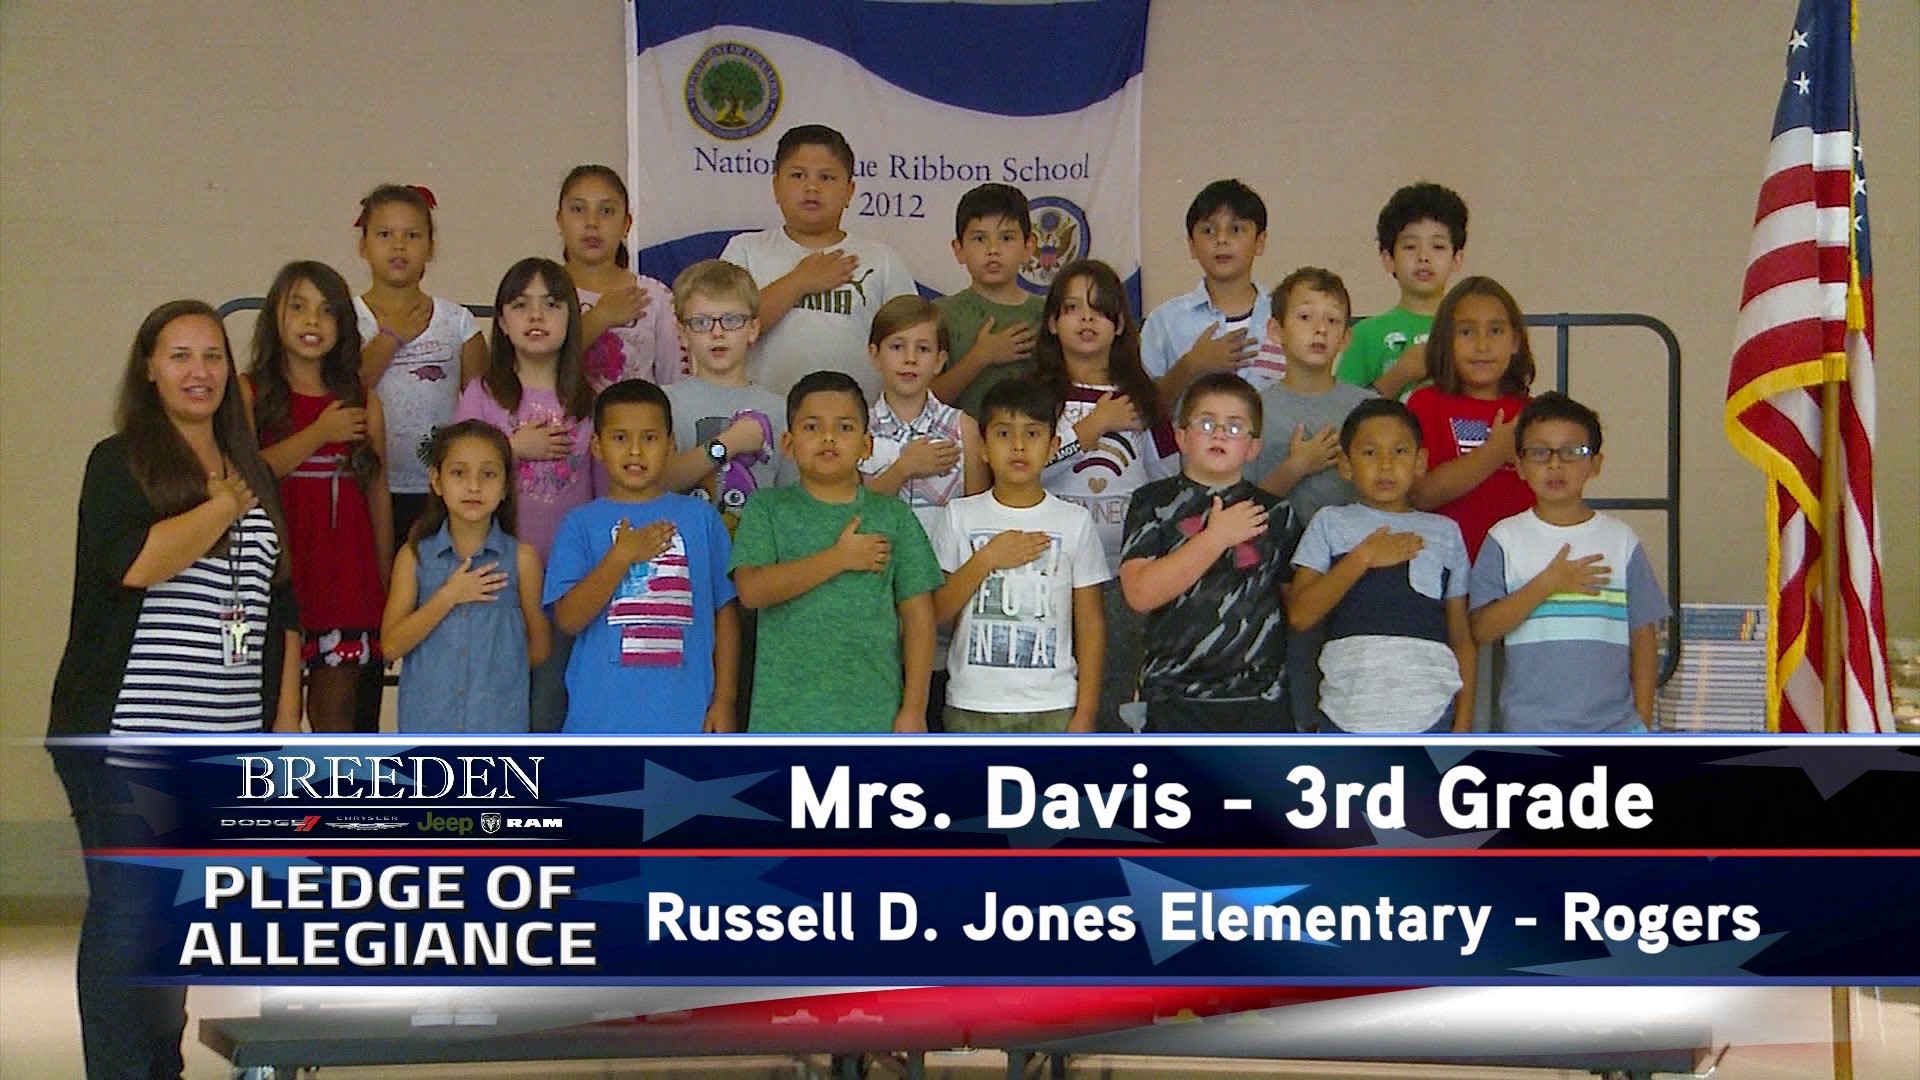 Mrs. Davis  3rd Grade Russell D. Jones Elementary